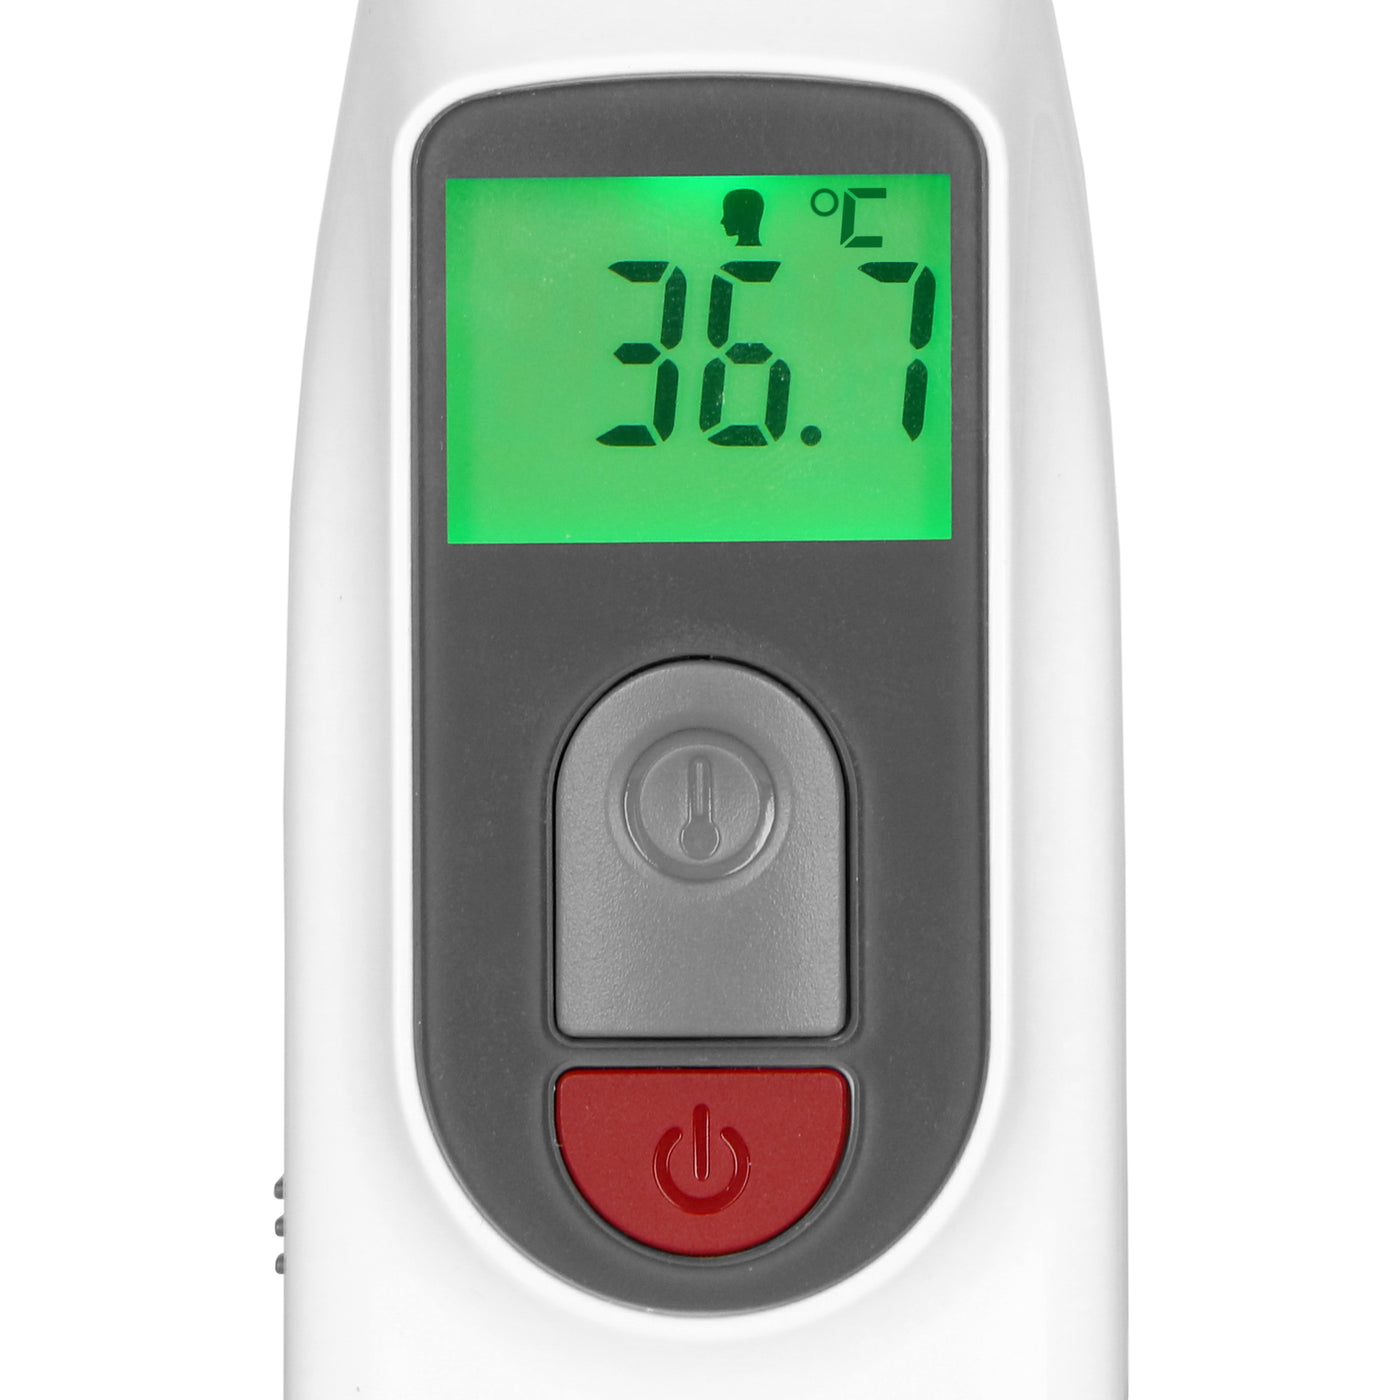 Fysic FCS250 - Gezondheidsmonitoring thuis set, bloeddrukmeter, saturatiemeter en infrarood thermometer